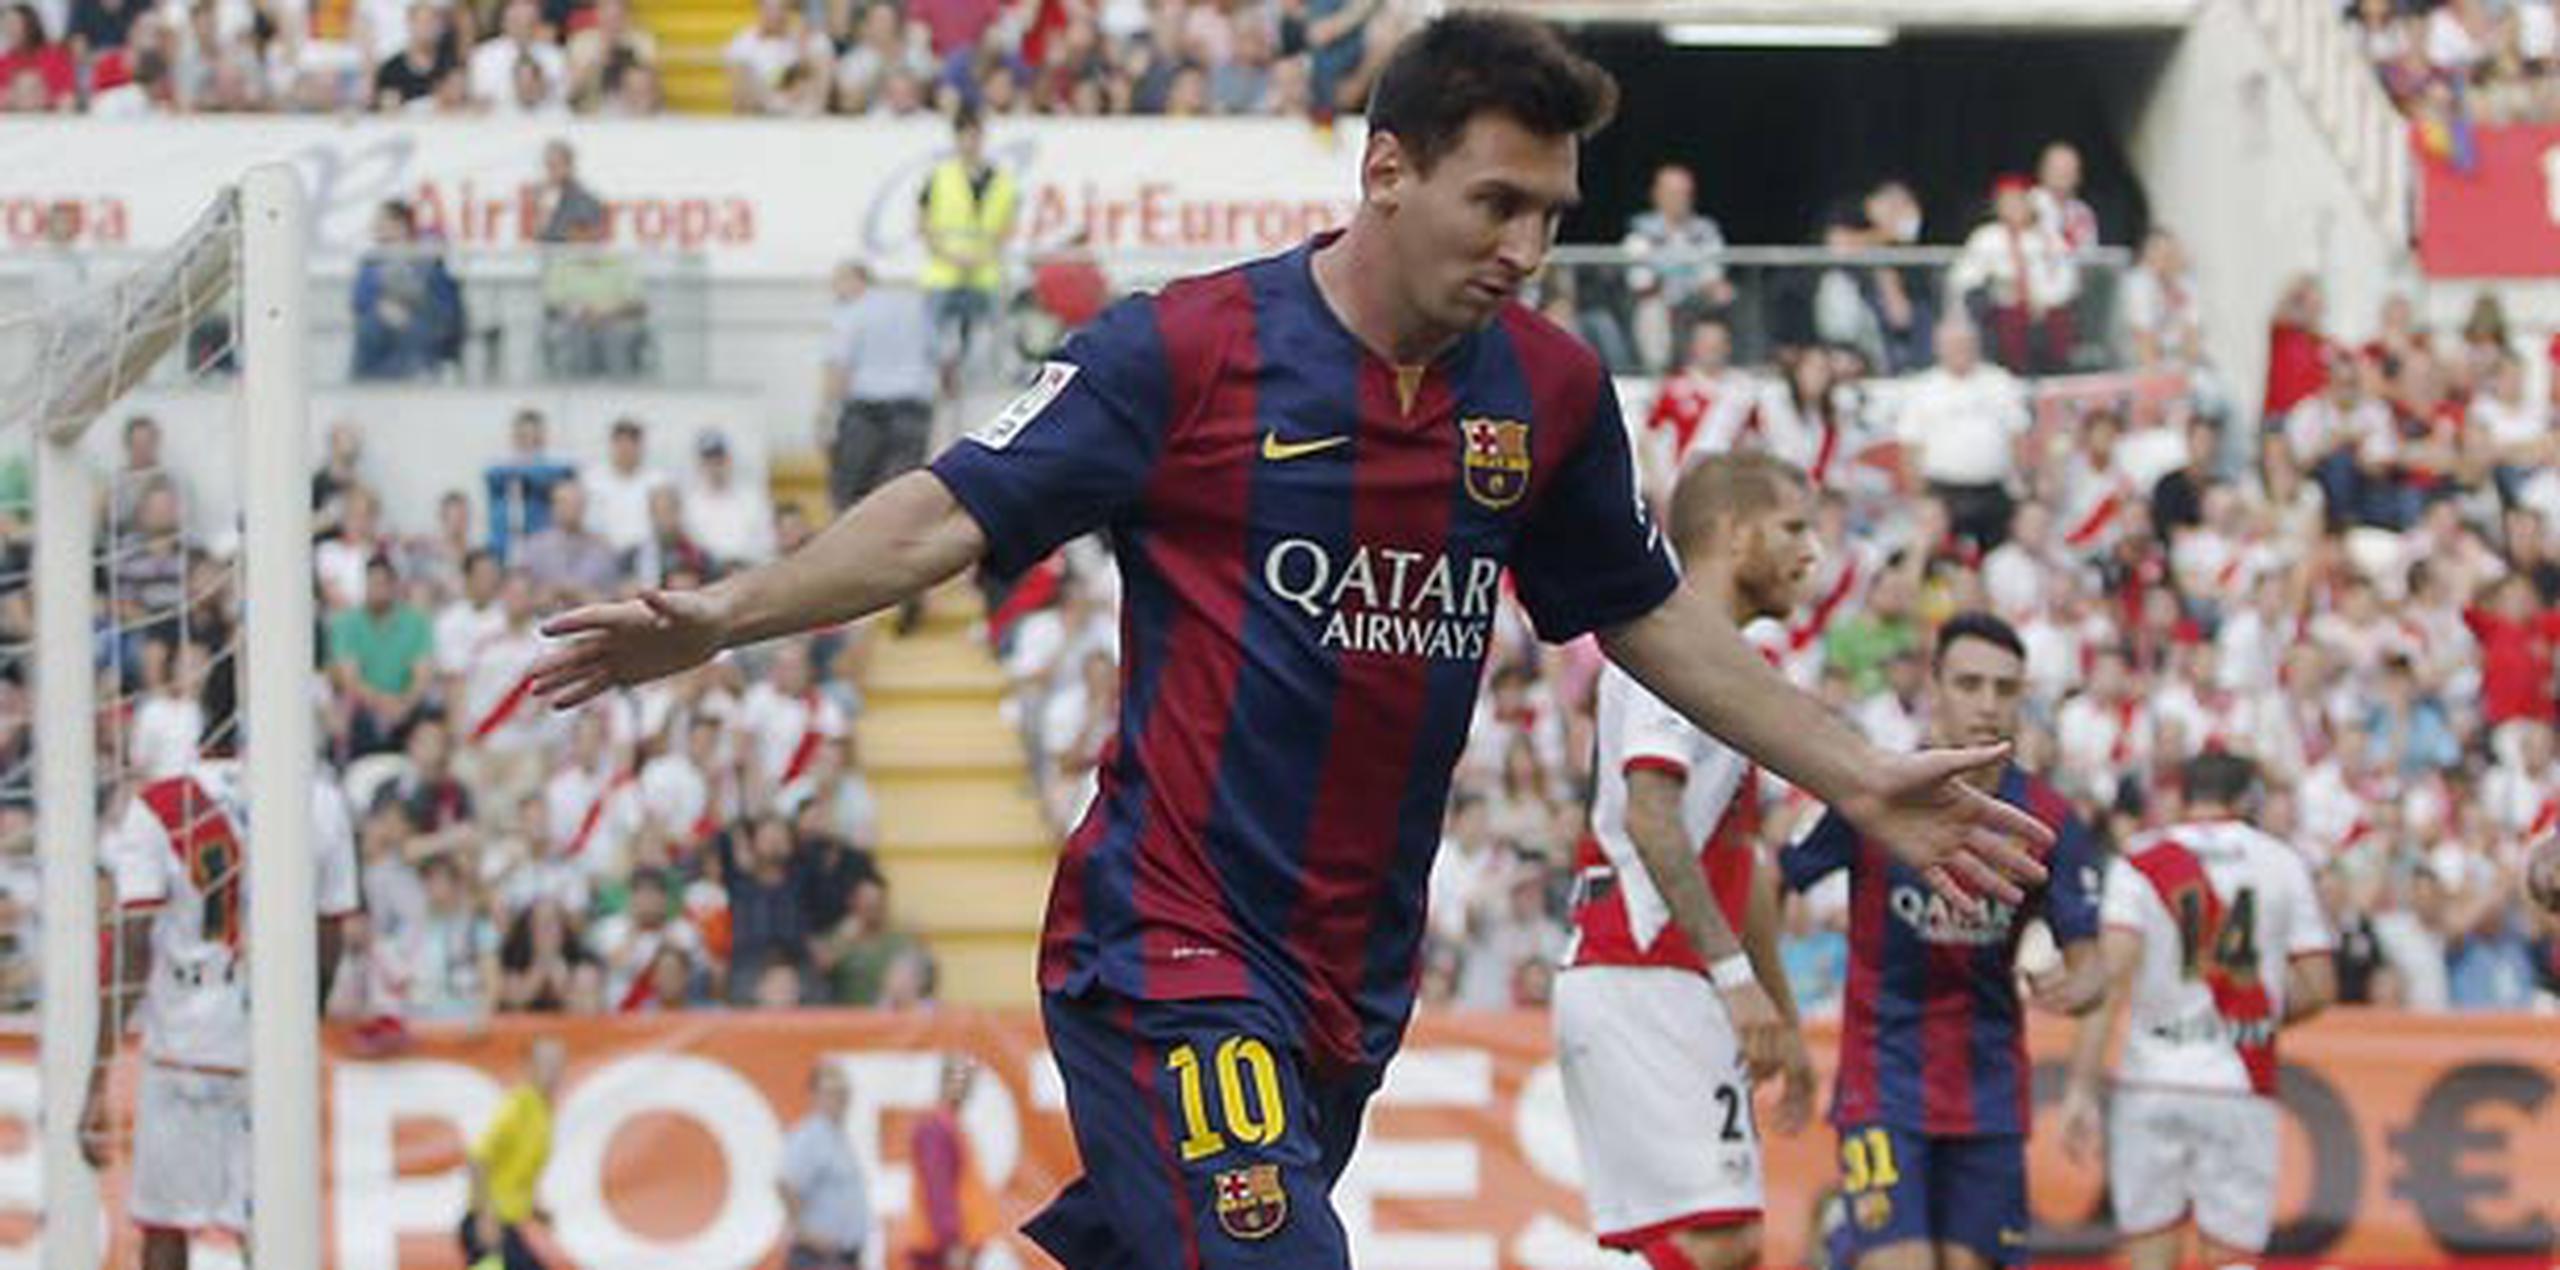 Es posible que Messi quiebre la marca en el próximo encuentro entre los máximos rivales, el próximo 25 de octubre. (Archivo)